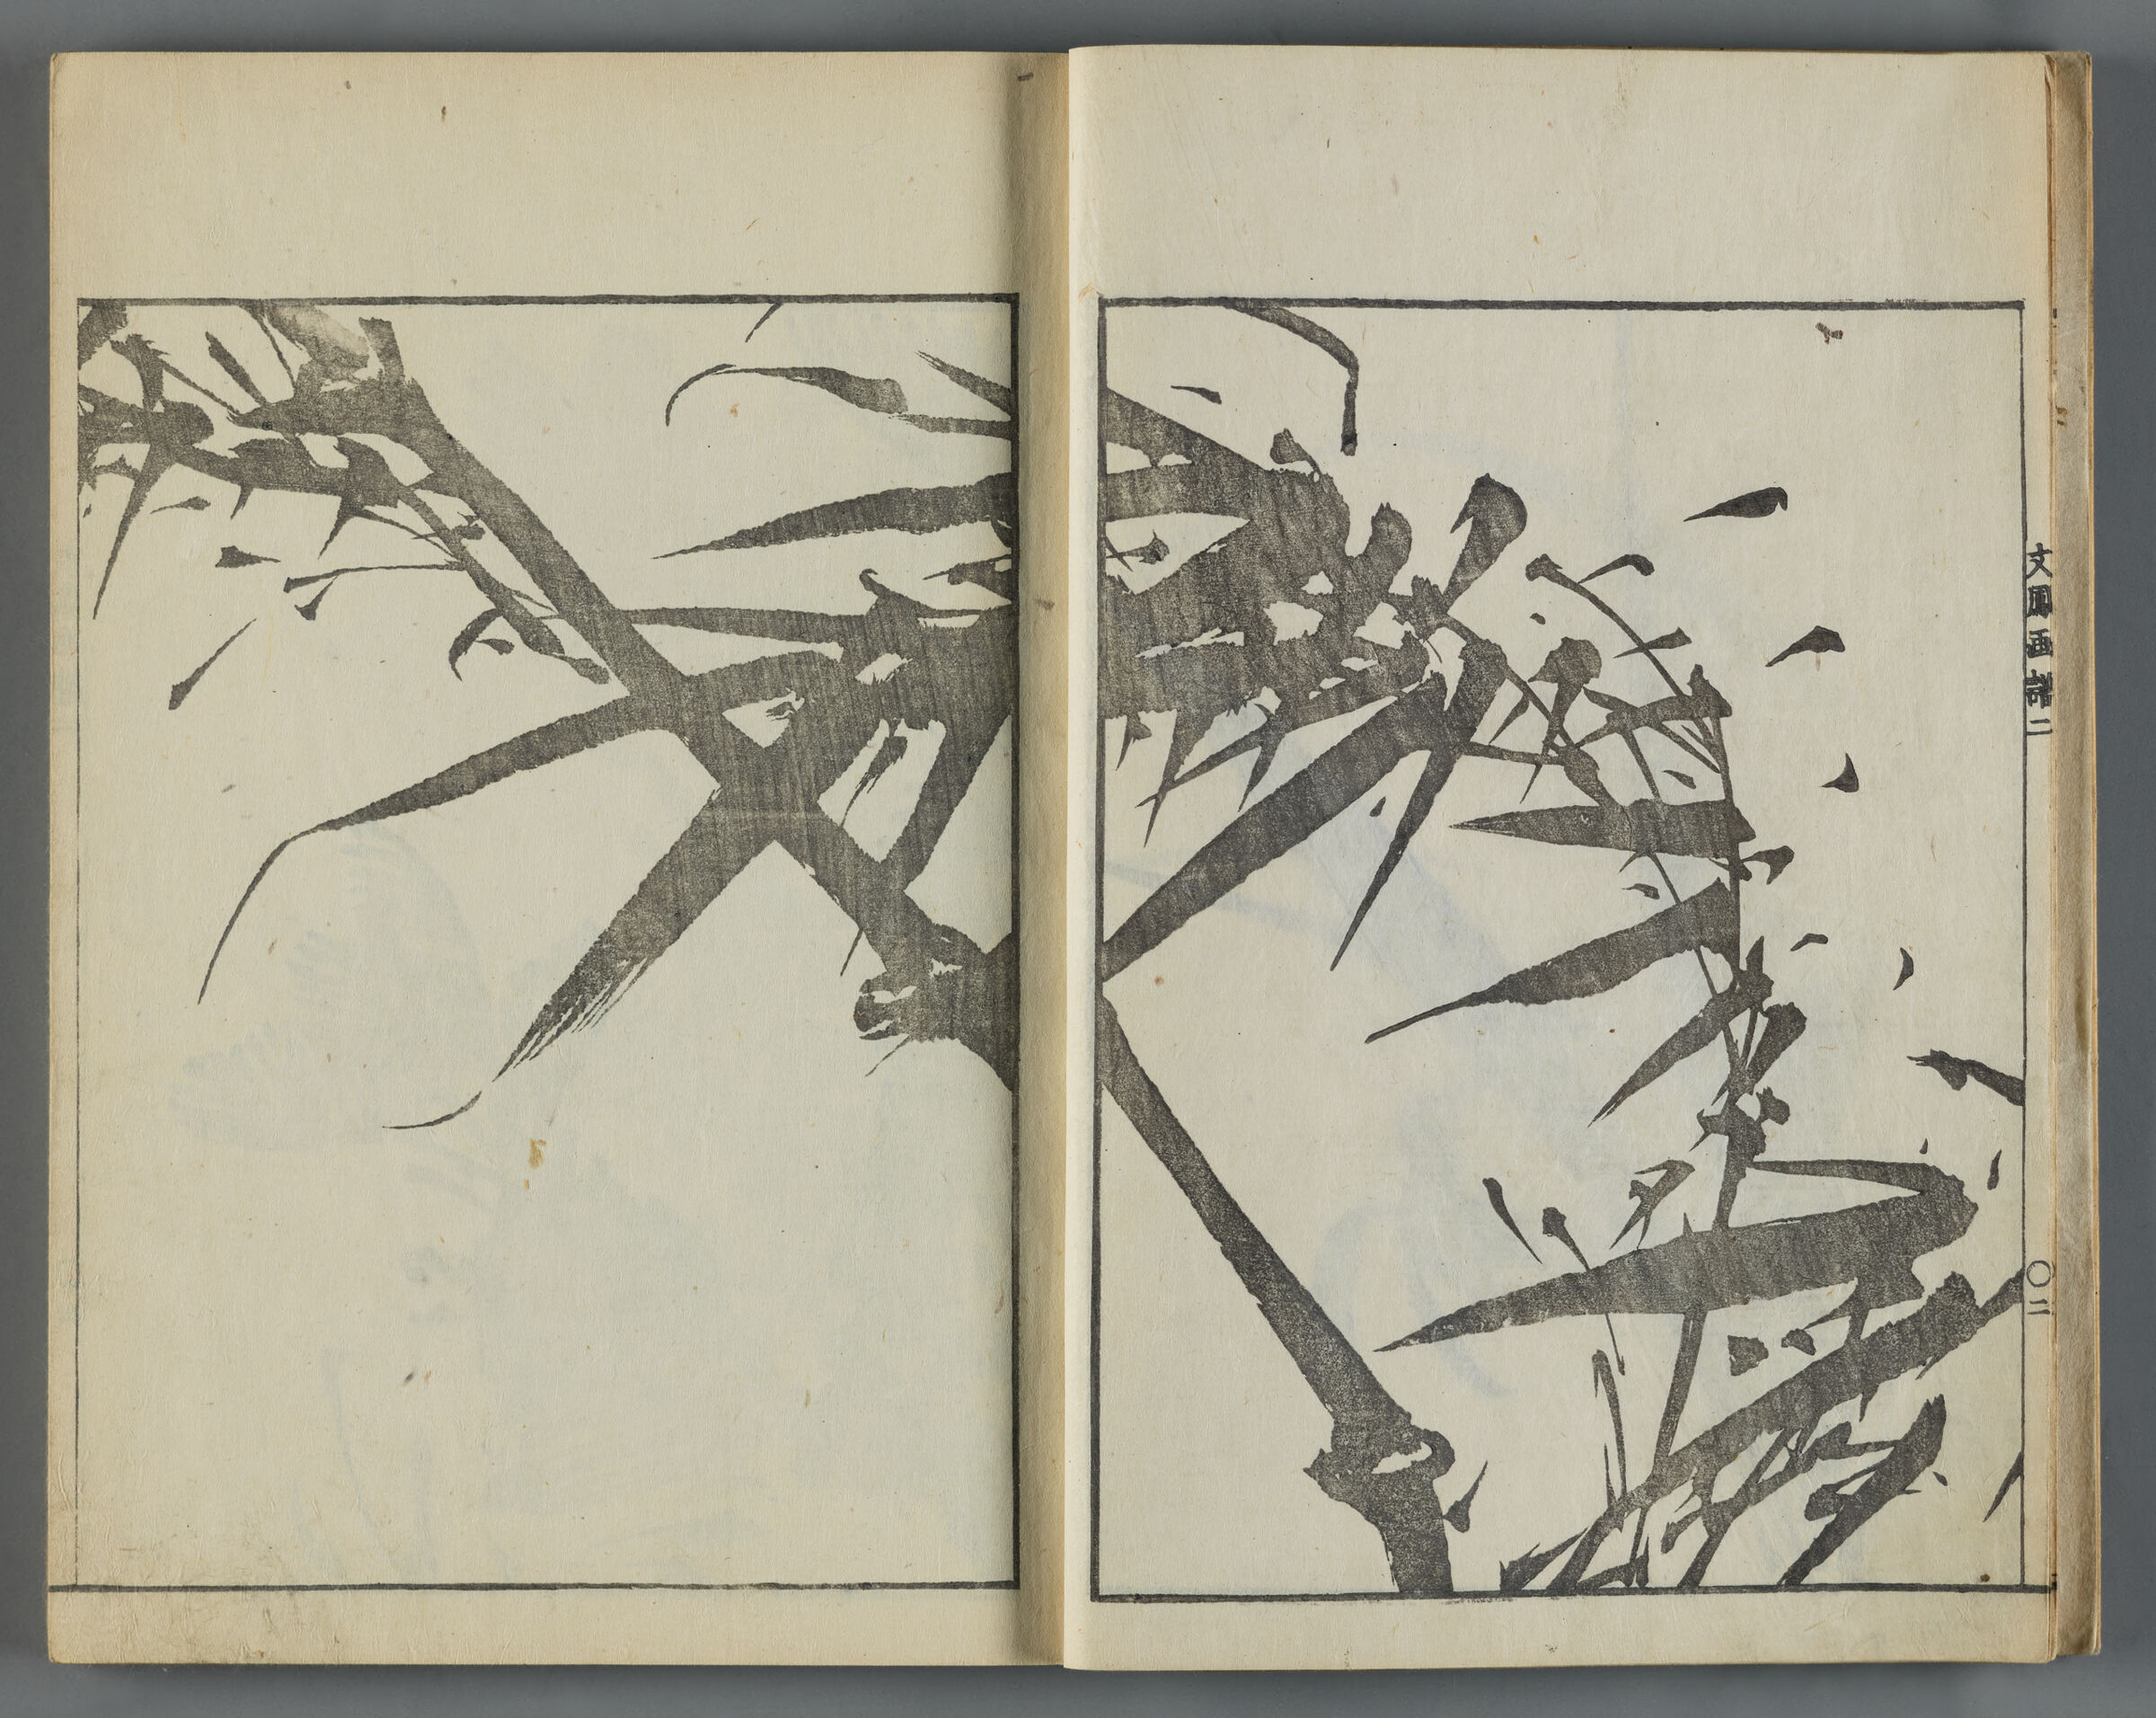 Bunpō Gafu Nihen (Model Sketches By Bunpō Vol.2)